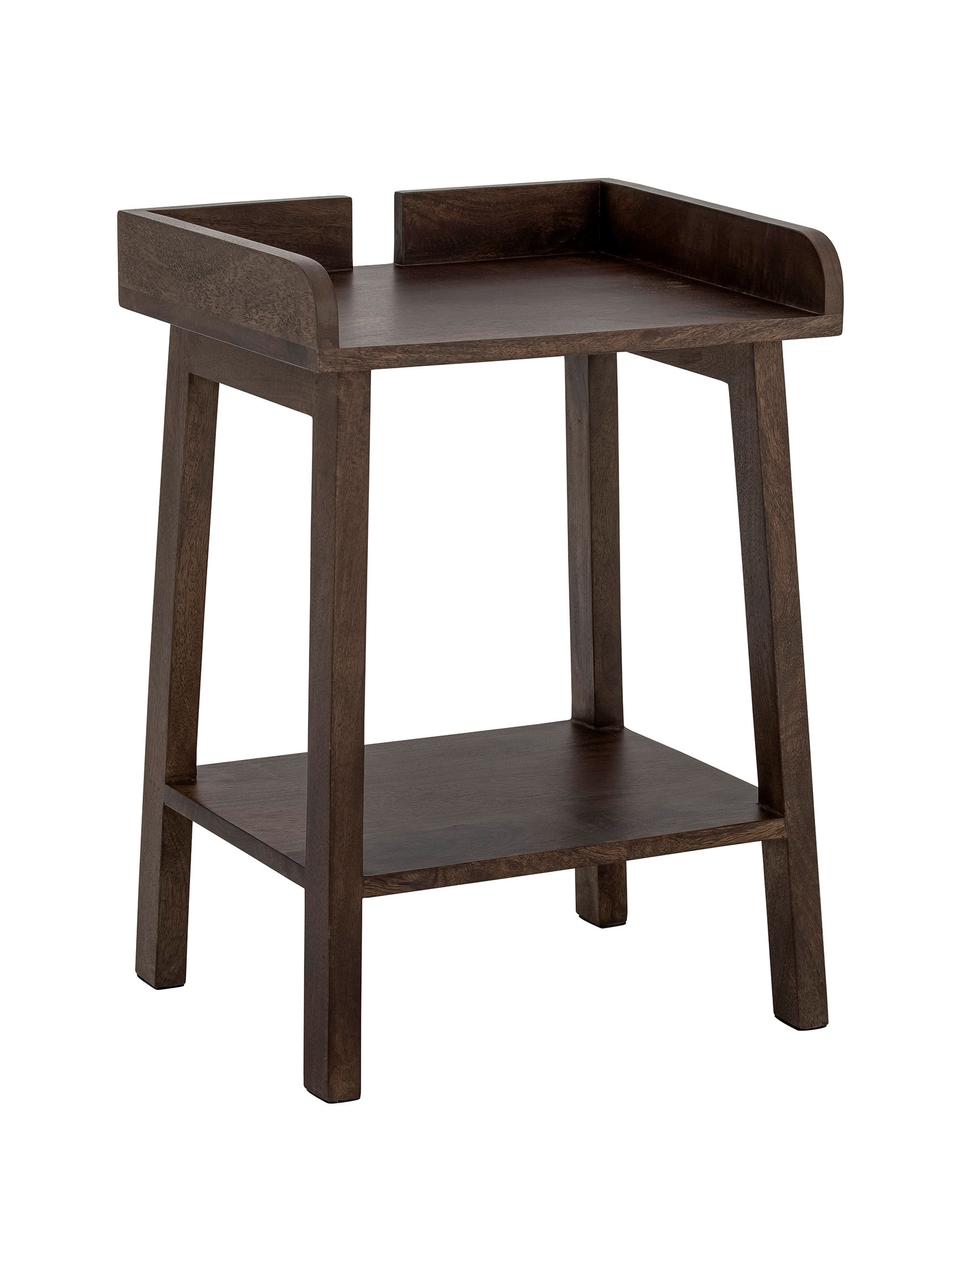 Odkládací stolek z mangového dřeva Clement, Mangové dřevo, Tmavě hnědá, Š 40 cm, H 35 cm